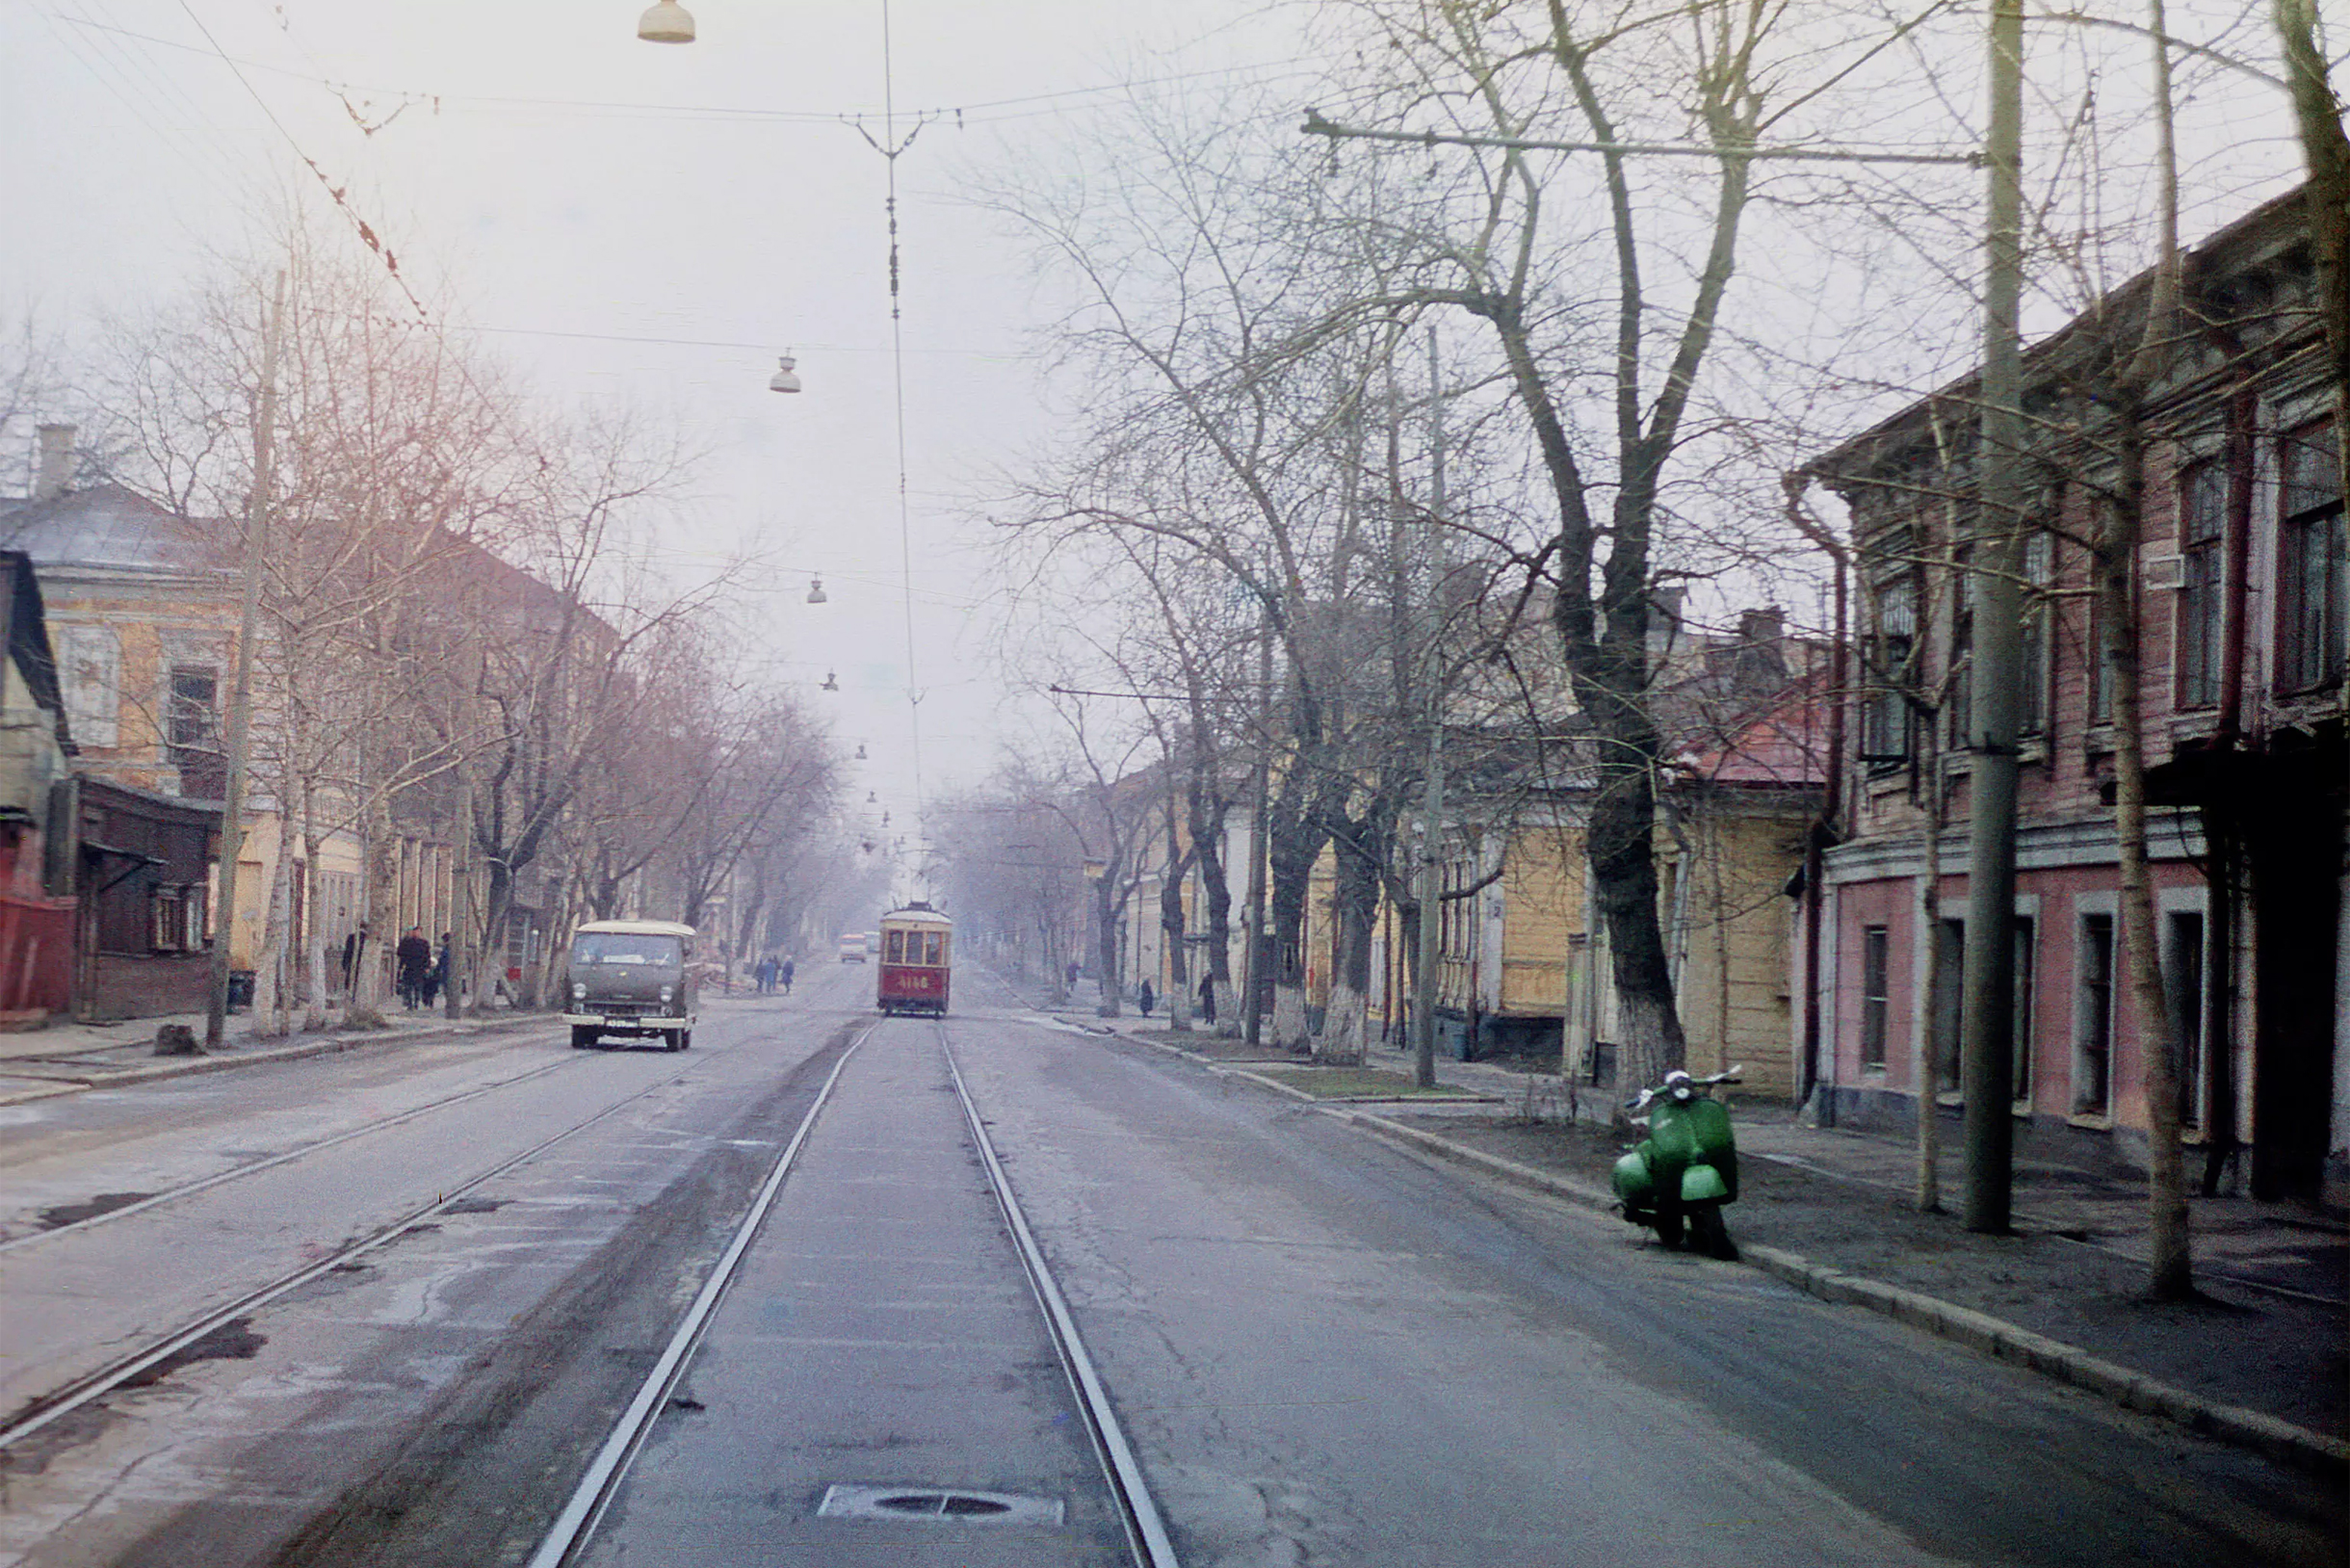 Так выглядела Марксистская улица в 1971 году, перед сносом. Она не могла выжить в заводском районе, где требовалось жилье для все новых рабочих. Фотография: Соболев Н.К.